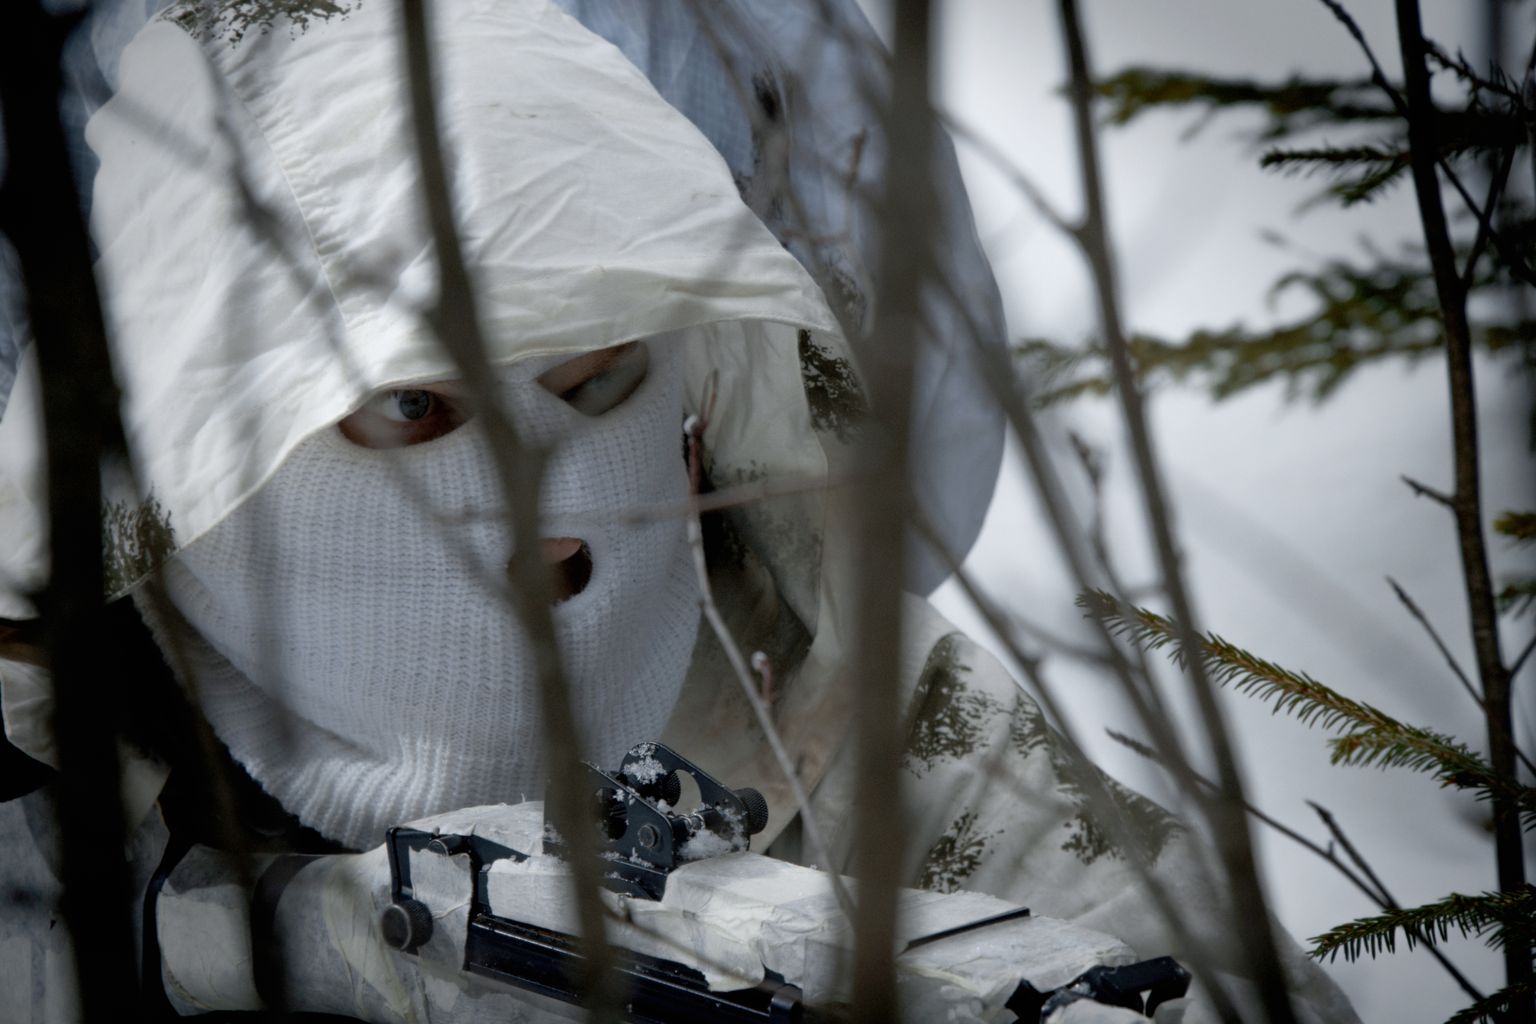 Soome kaitseväelane lumises metsas. Pilt on illustreeriv